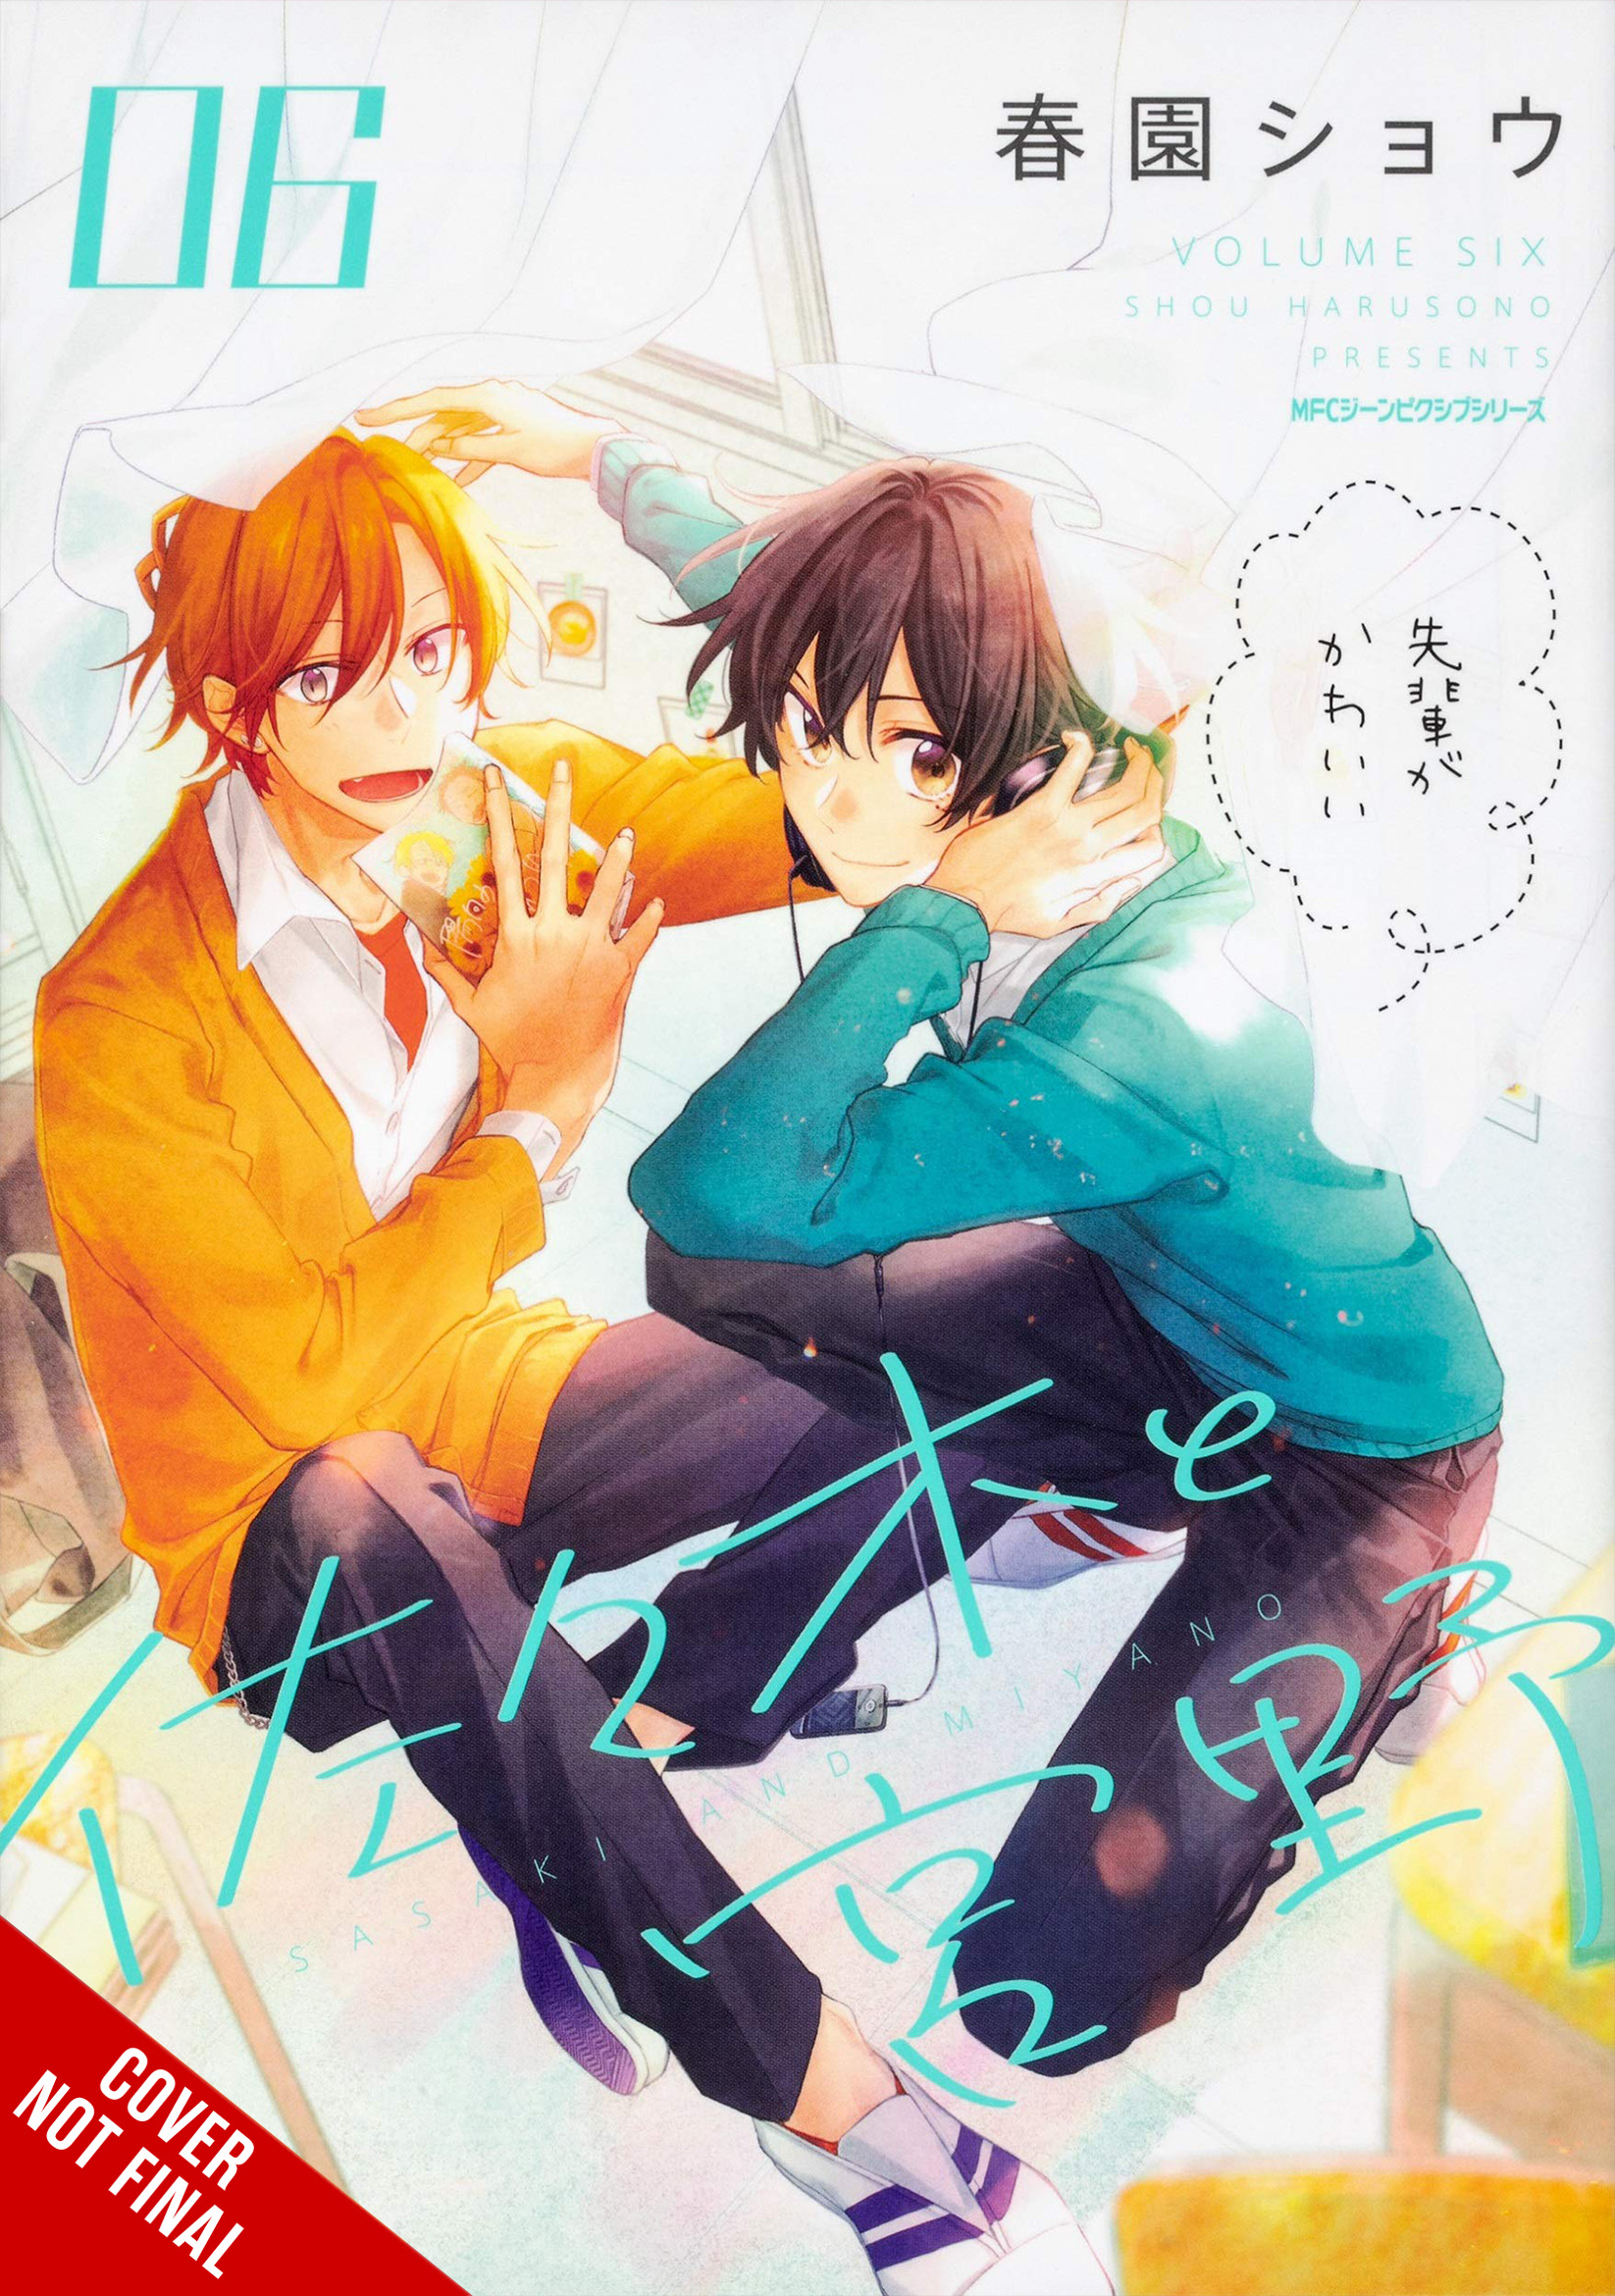 Faixa 06 - Anime X Novel